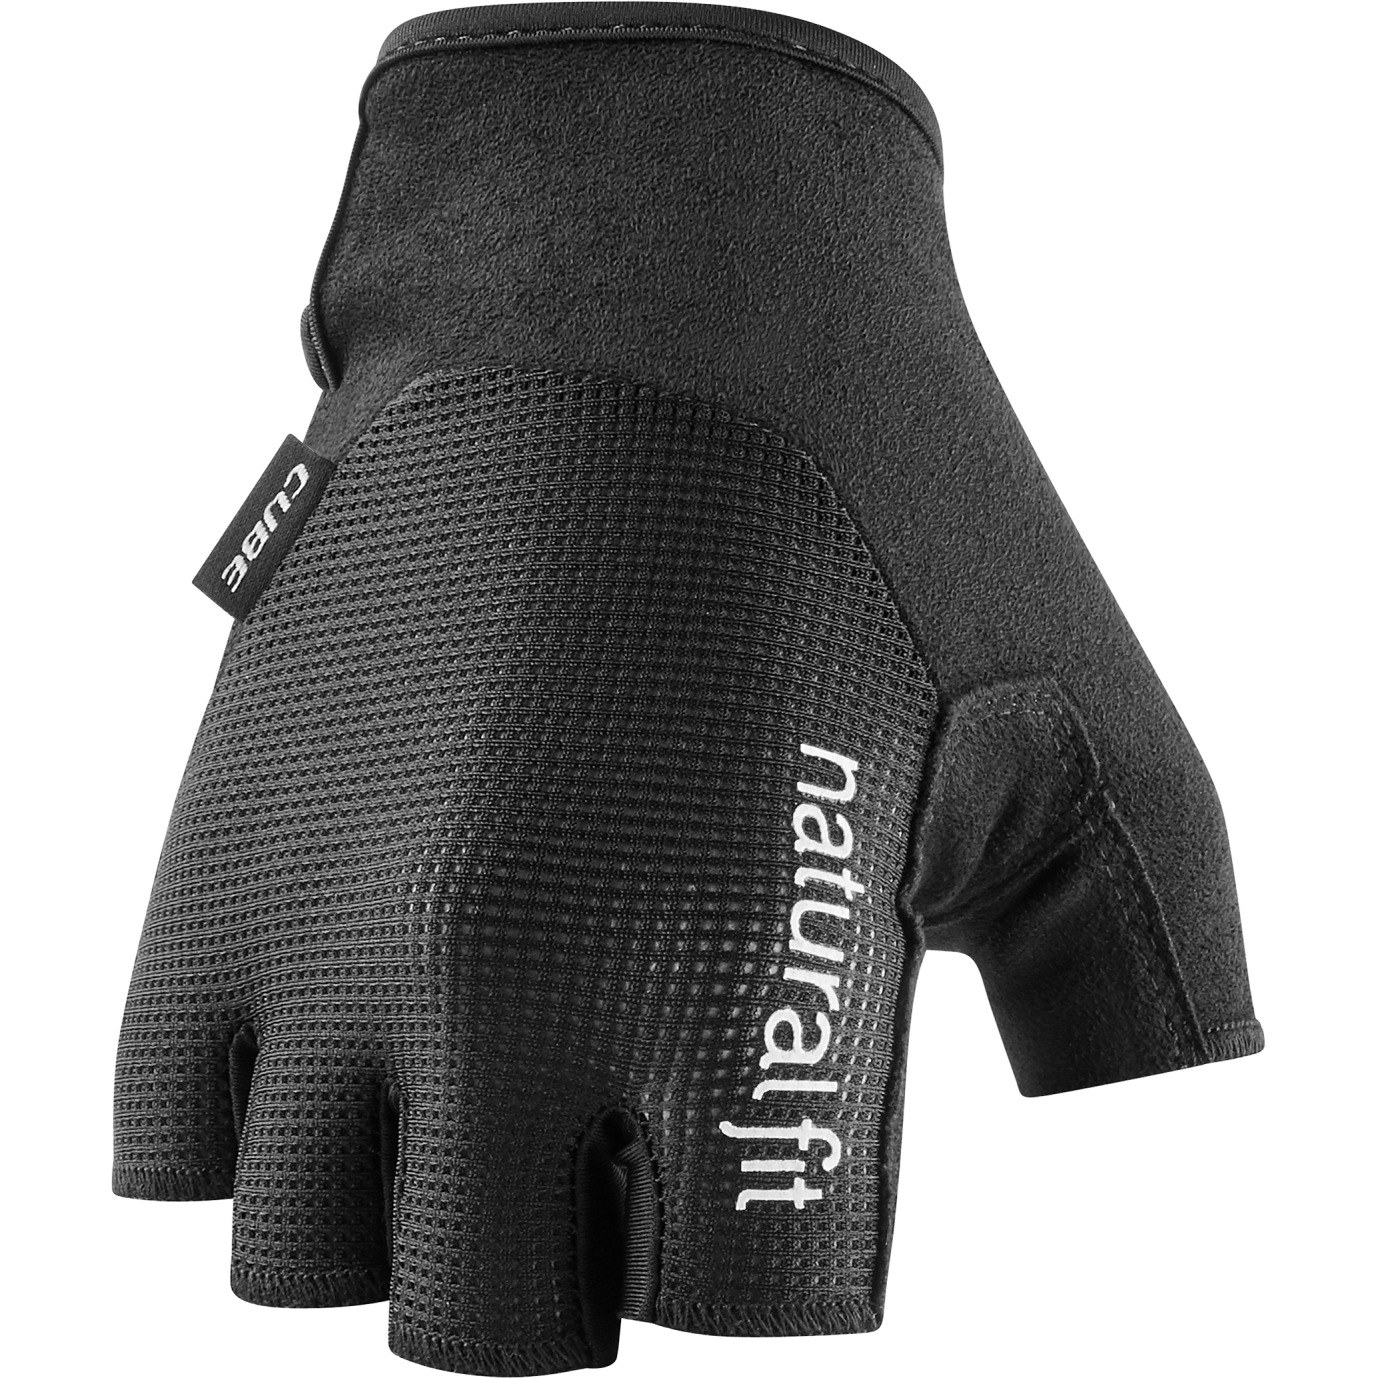 Produktbild von CUBE X NF Kurzfinger-Handschuhe - schwarz